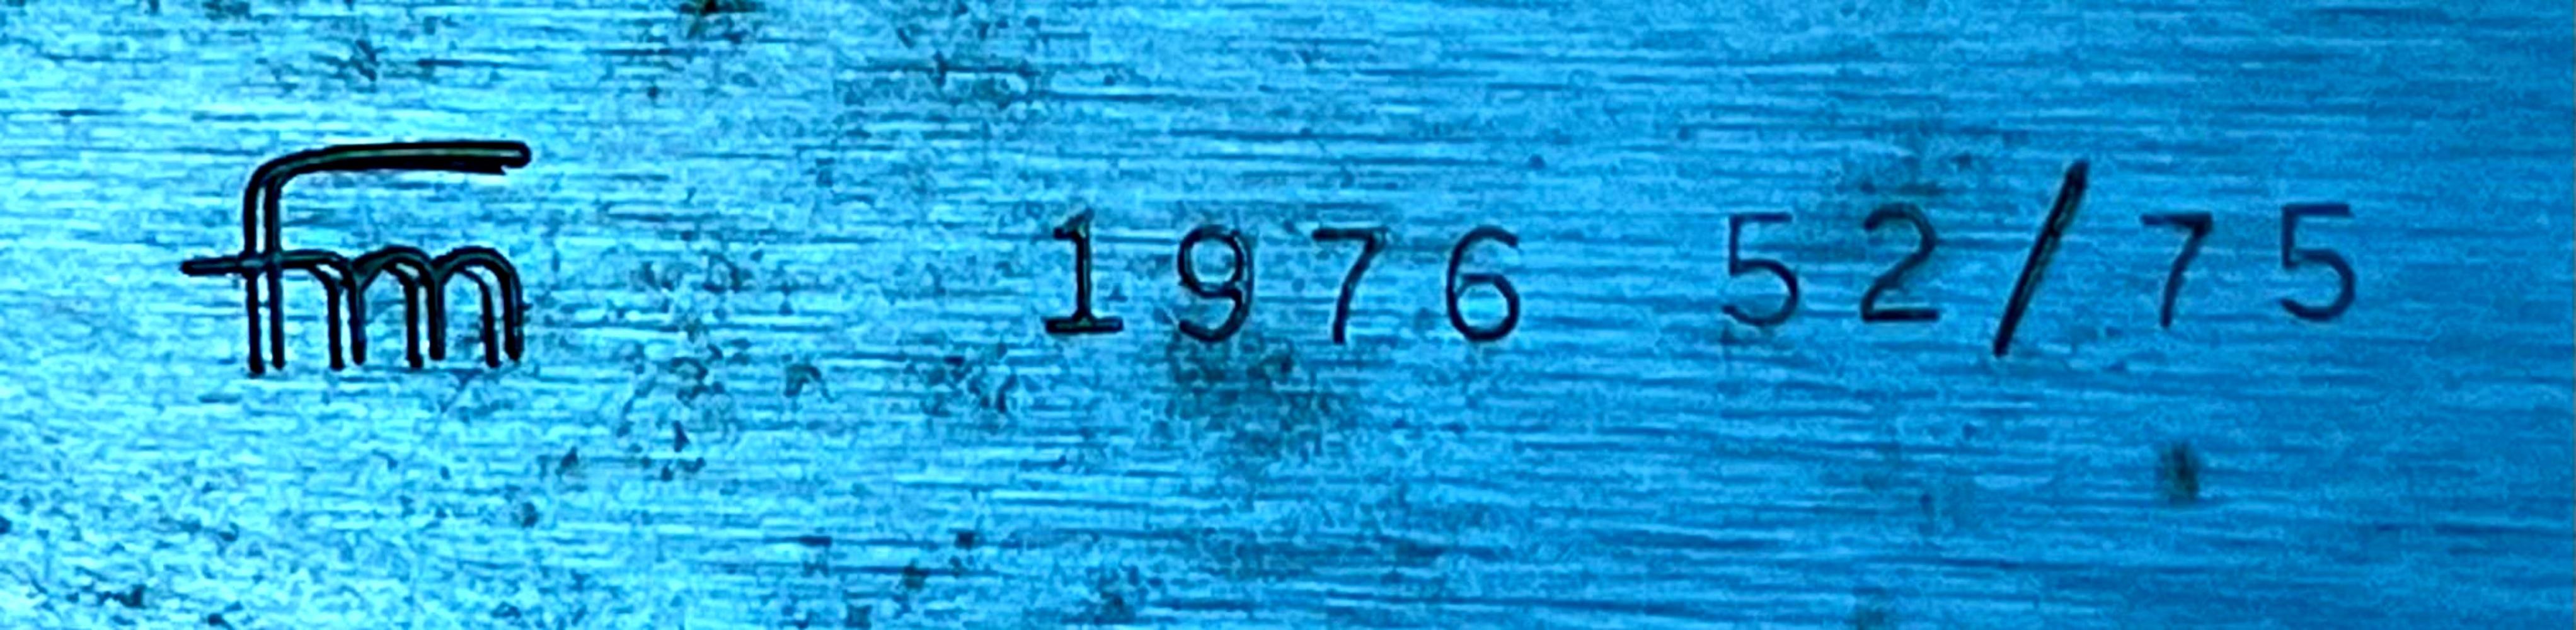 Forrest Myers
Abstraction géométrique sans titre, 1976
Aluminium peint
 Signé dans le métal avec les initiales incisées de l'artiste (FM) et cachet numéroté 52/75 ; porte la marque de la fonderie Treitel-Gratz
15 × 13 1/2 × 6 in
Non encadré
Cette